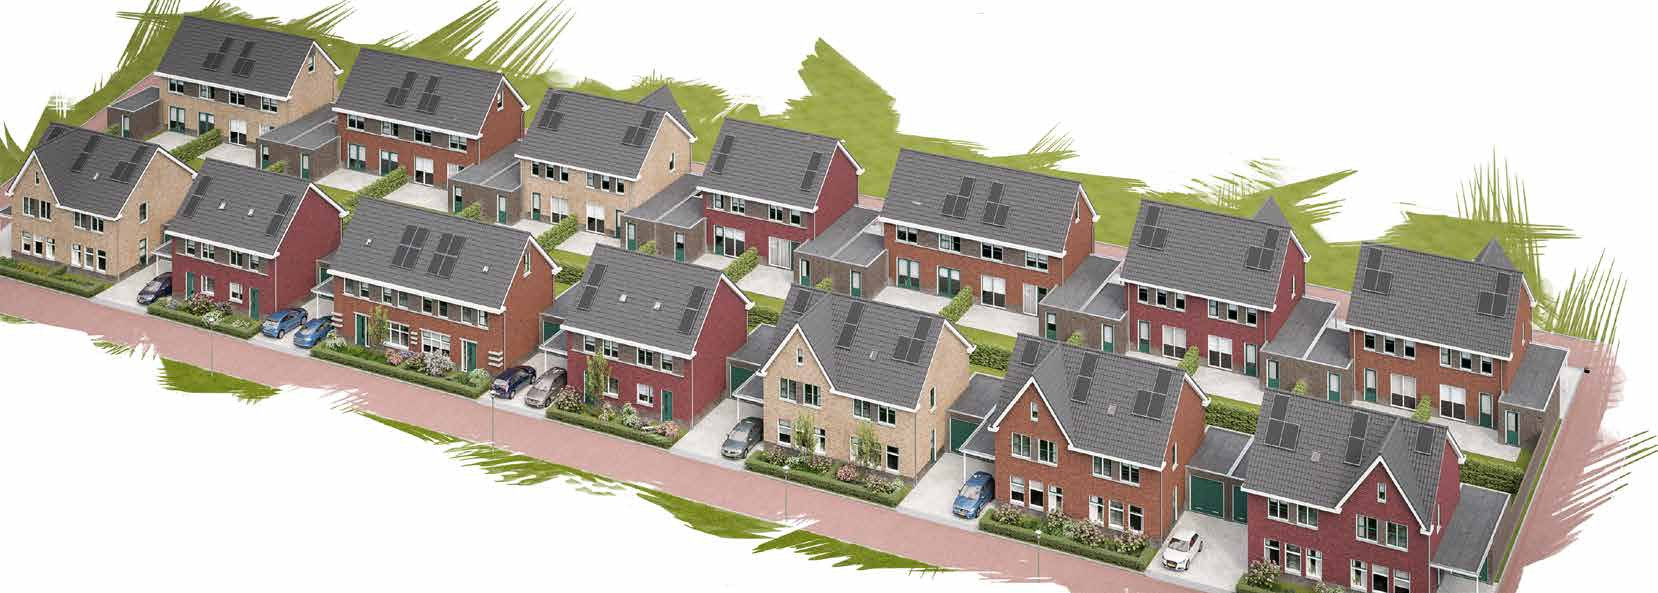 Een energiezuinige woning met zonnepanelen Prettig wonen Aan de oostkant van het Brabantse Eersel, vind je Kerkebogten, een nieuwe veelzijdige woonwijk met diverse woningtypes.